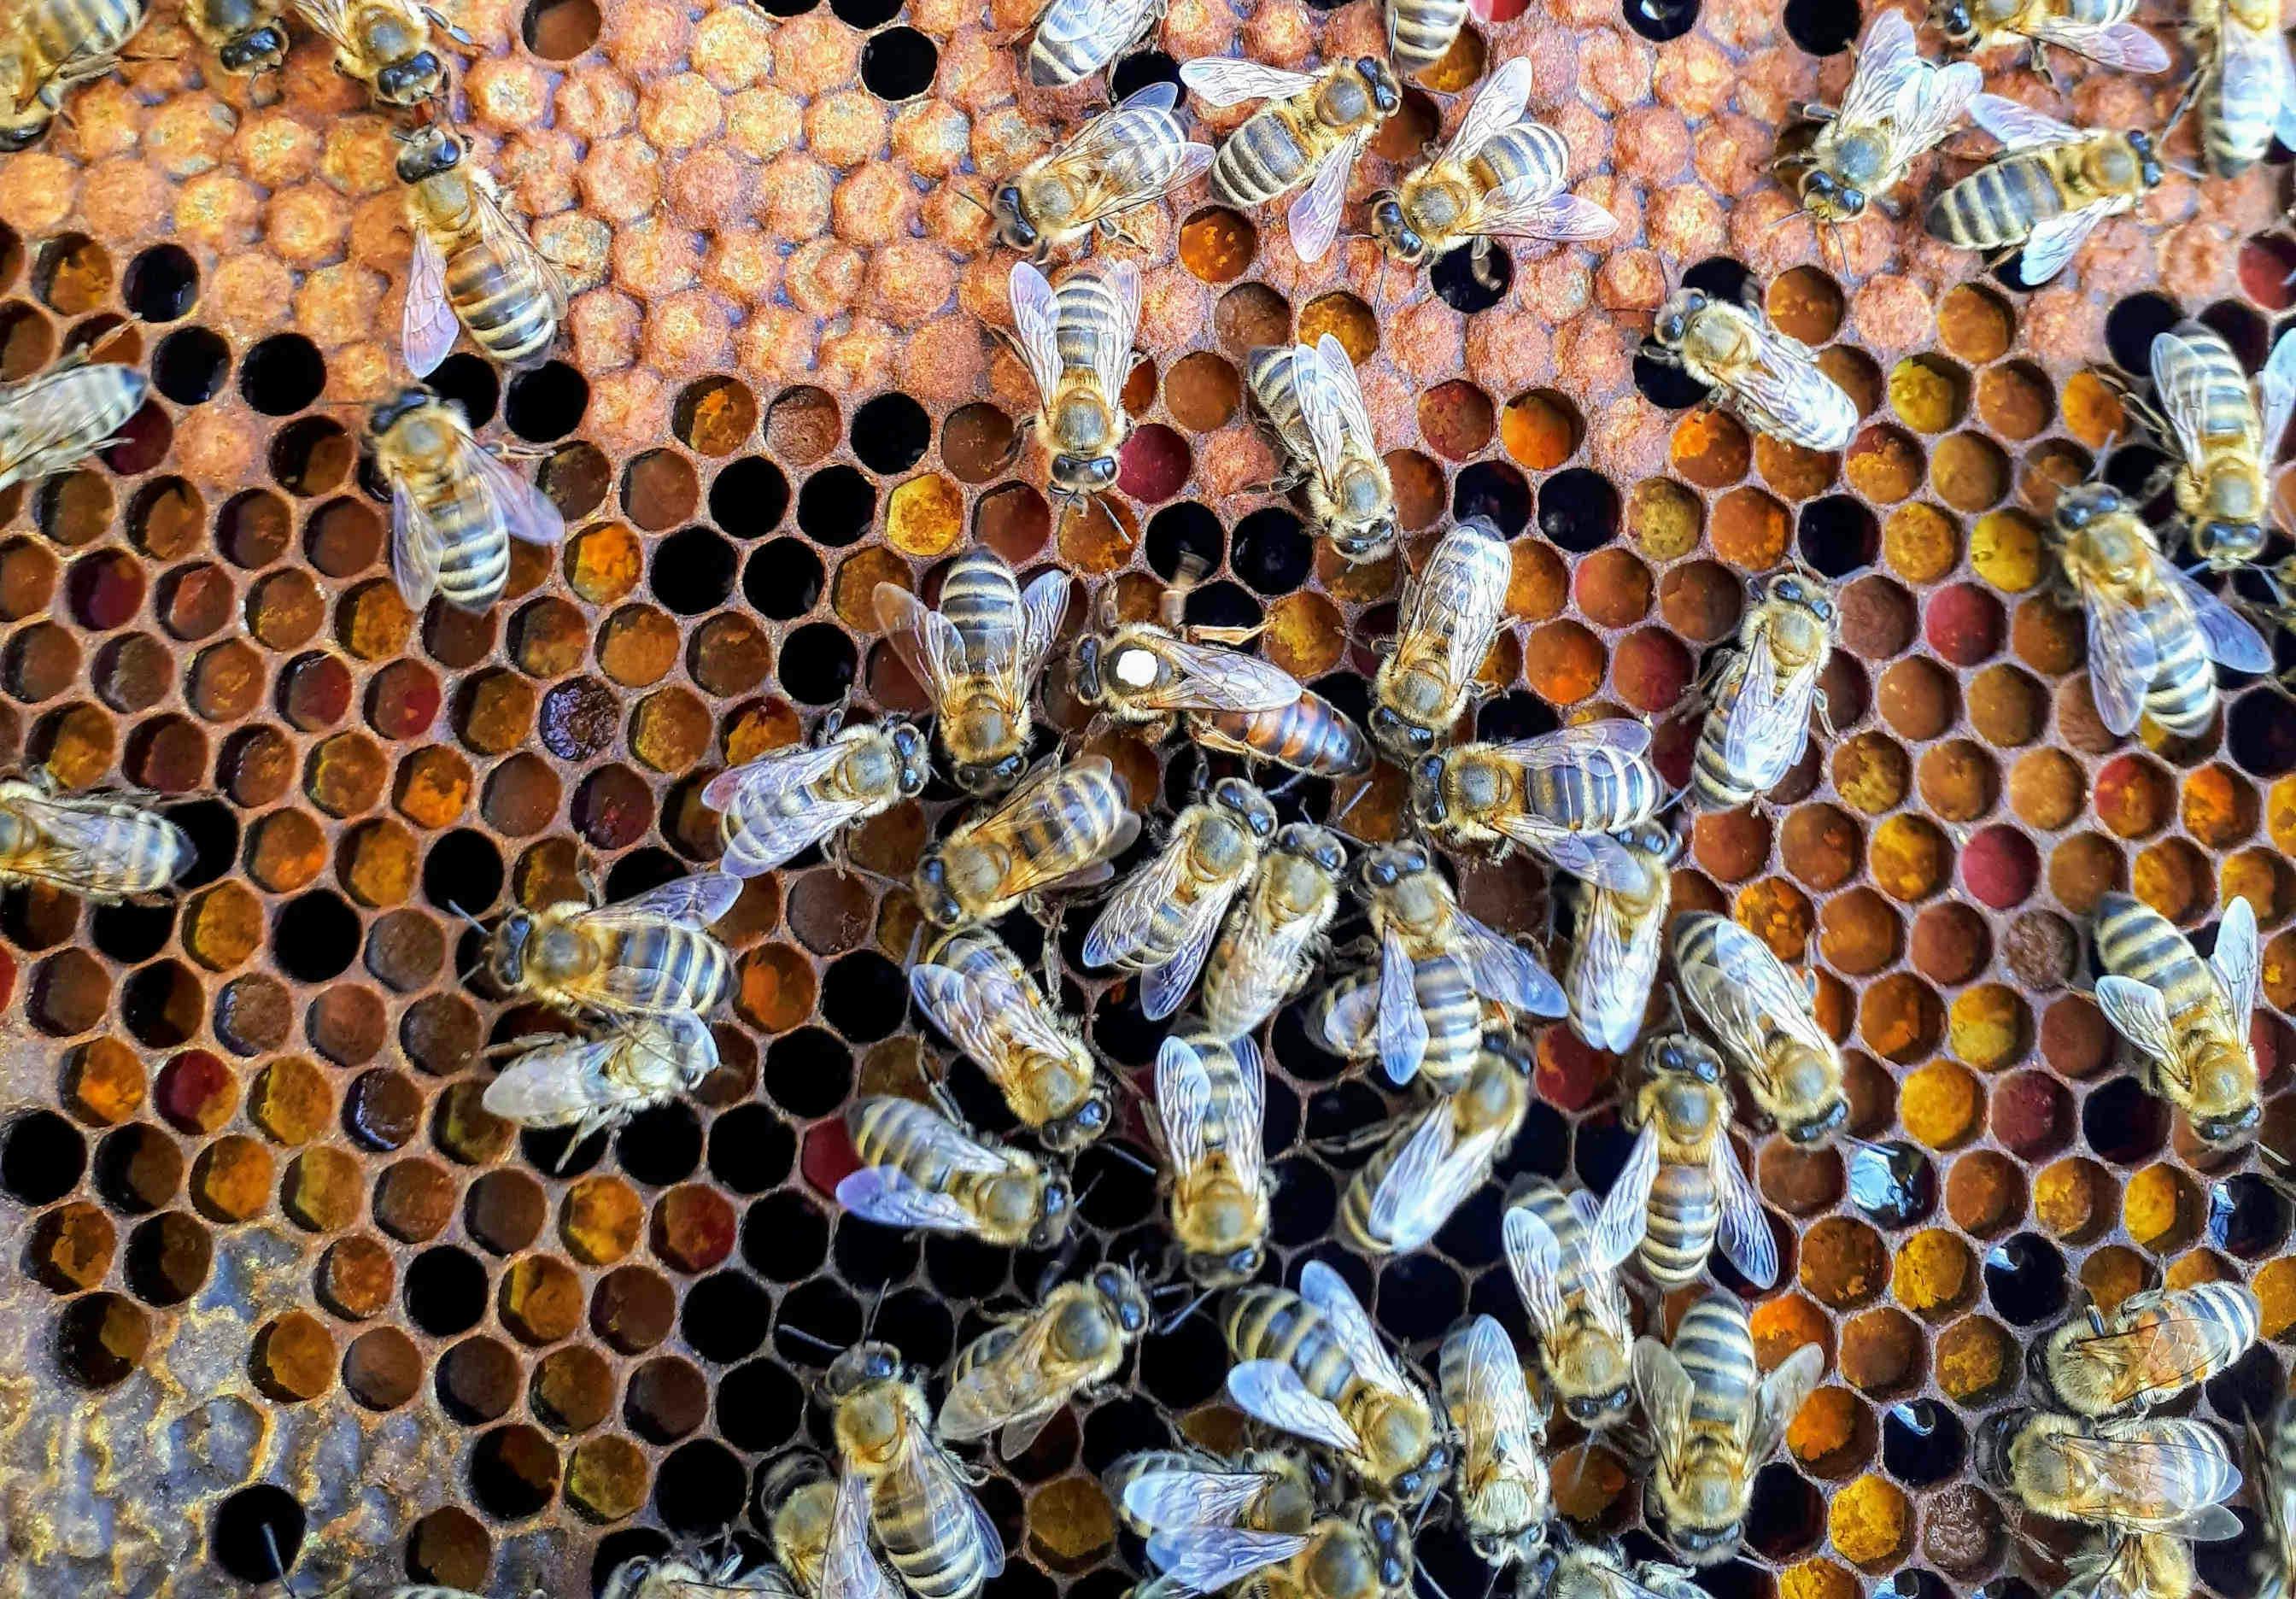 Merkmale und Eigenschaften der Bienenkönigin